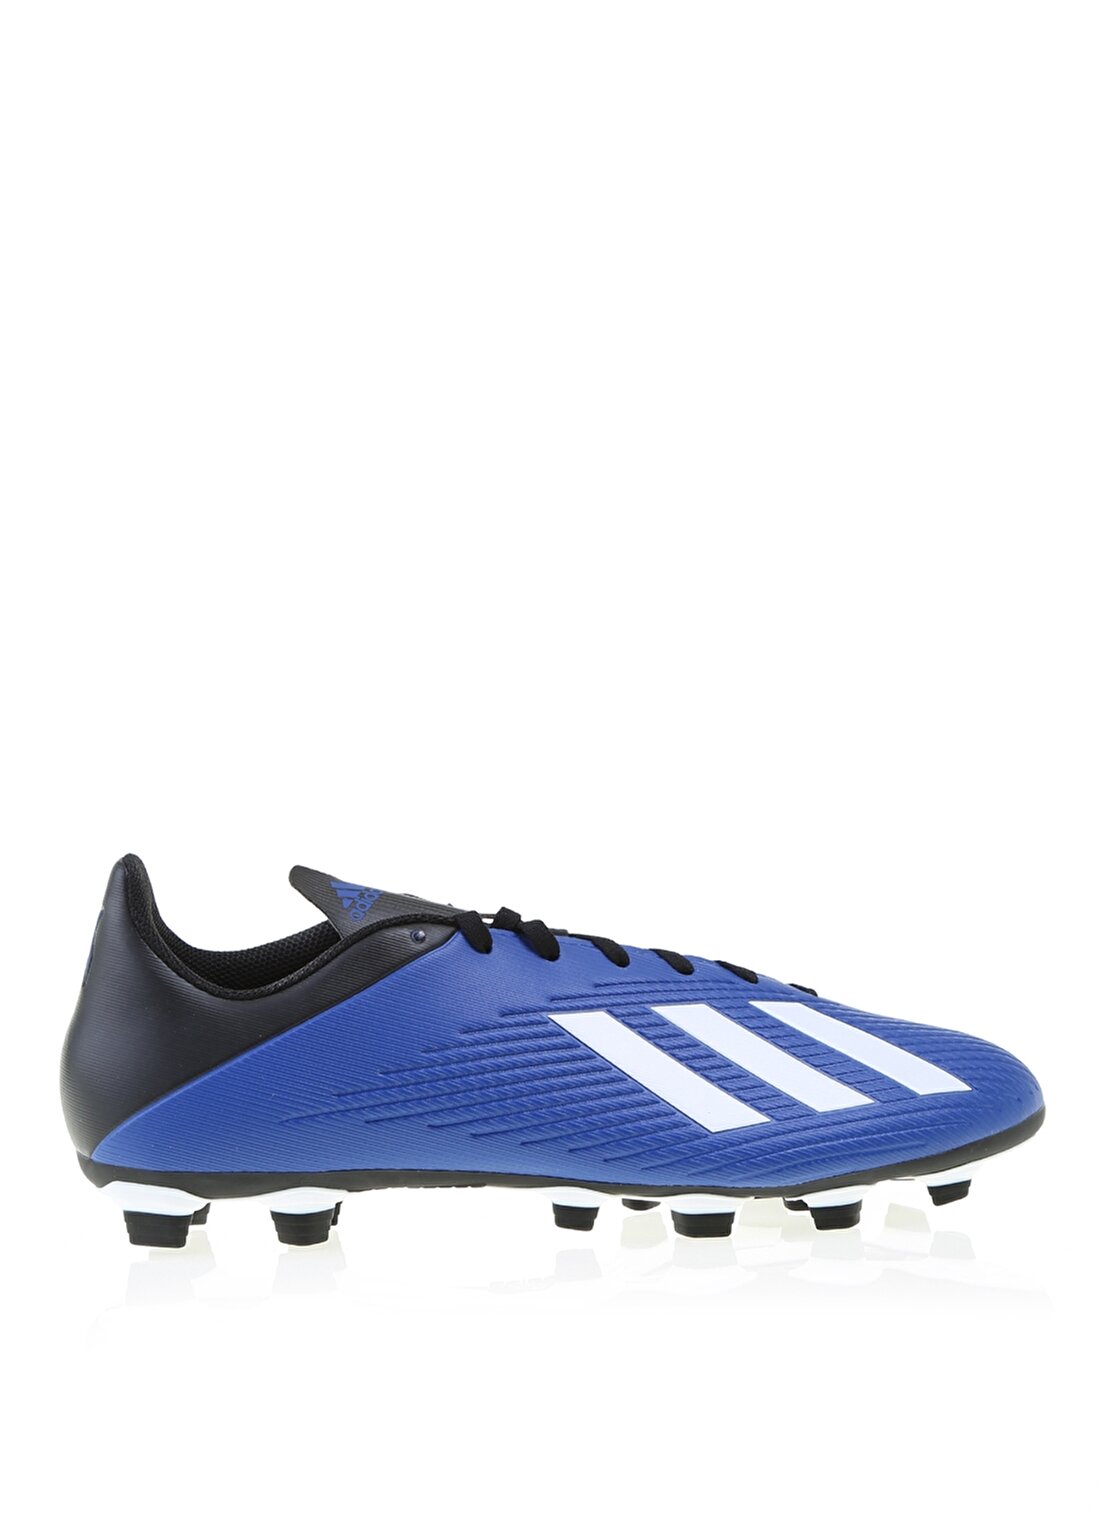 Adidas EF1698 X 19.4 Fxg Erkek Futbol Ayakkabısı